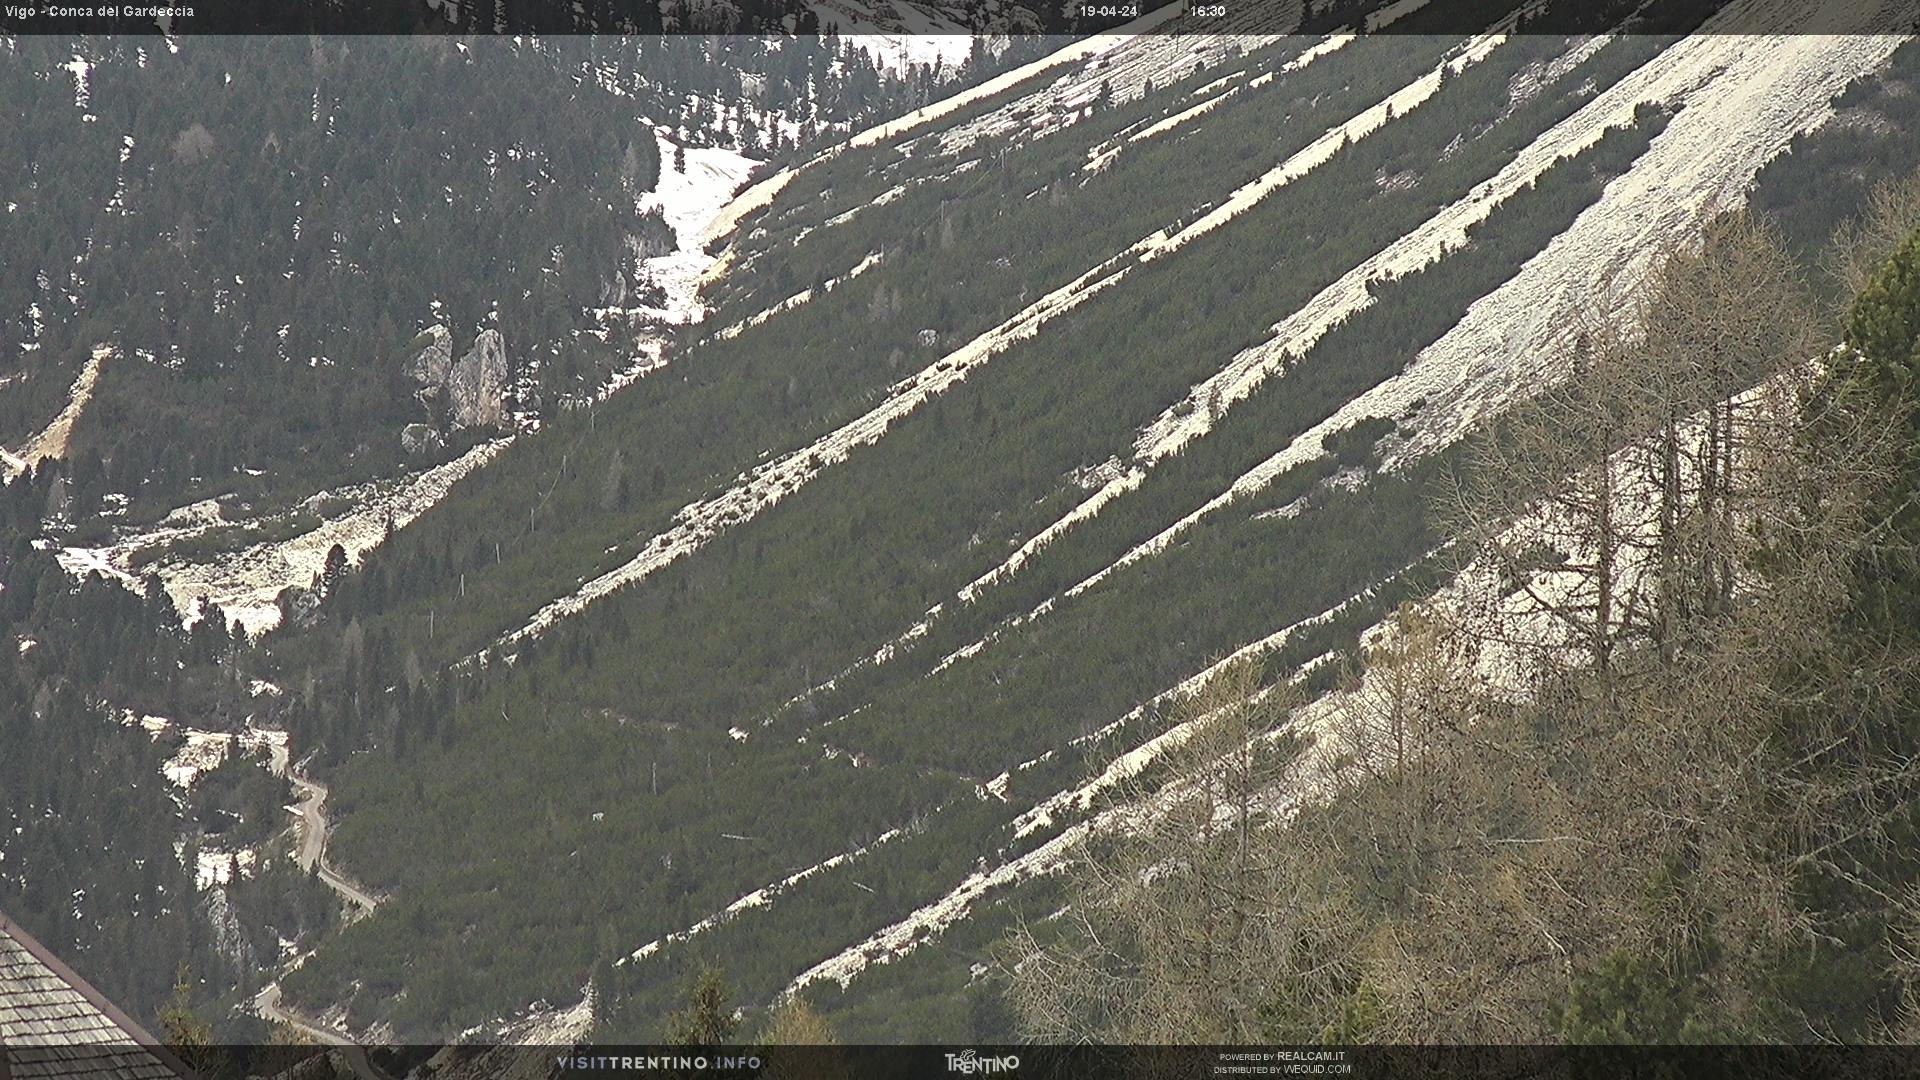 Webcam Vigo di Fassa - Catinaccio - Gardeccia - Höhenlage: 1.997 mPosition: Ciampedìe Aussichtspunkt: statische Webcam. Der Blick streift über die Mulde des Gardeccia und das Vajolet-Tal.